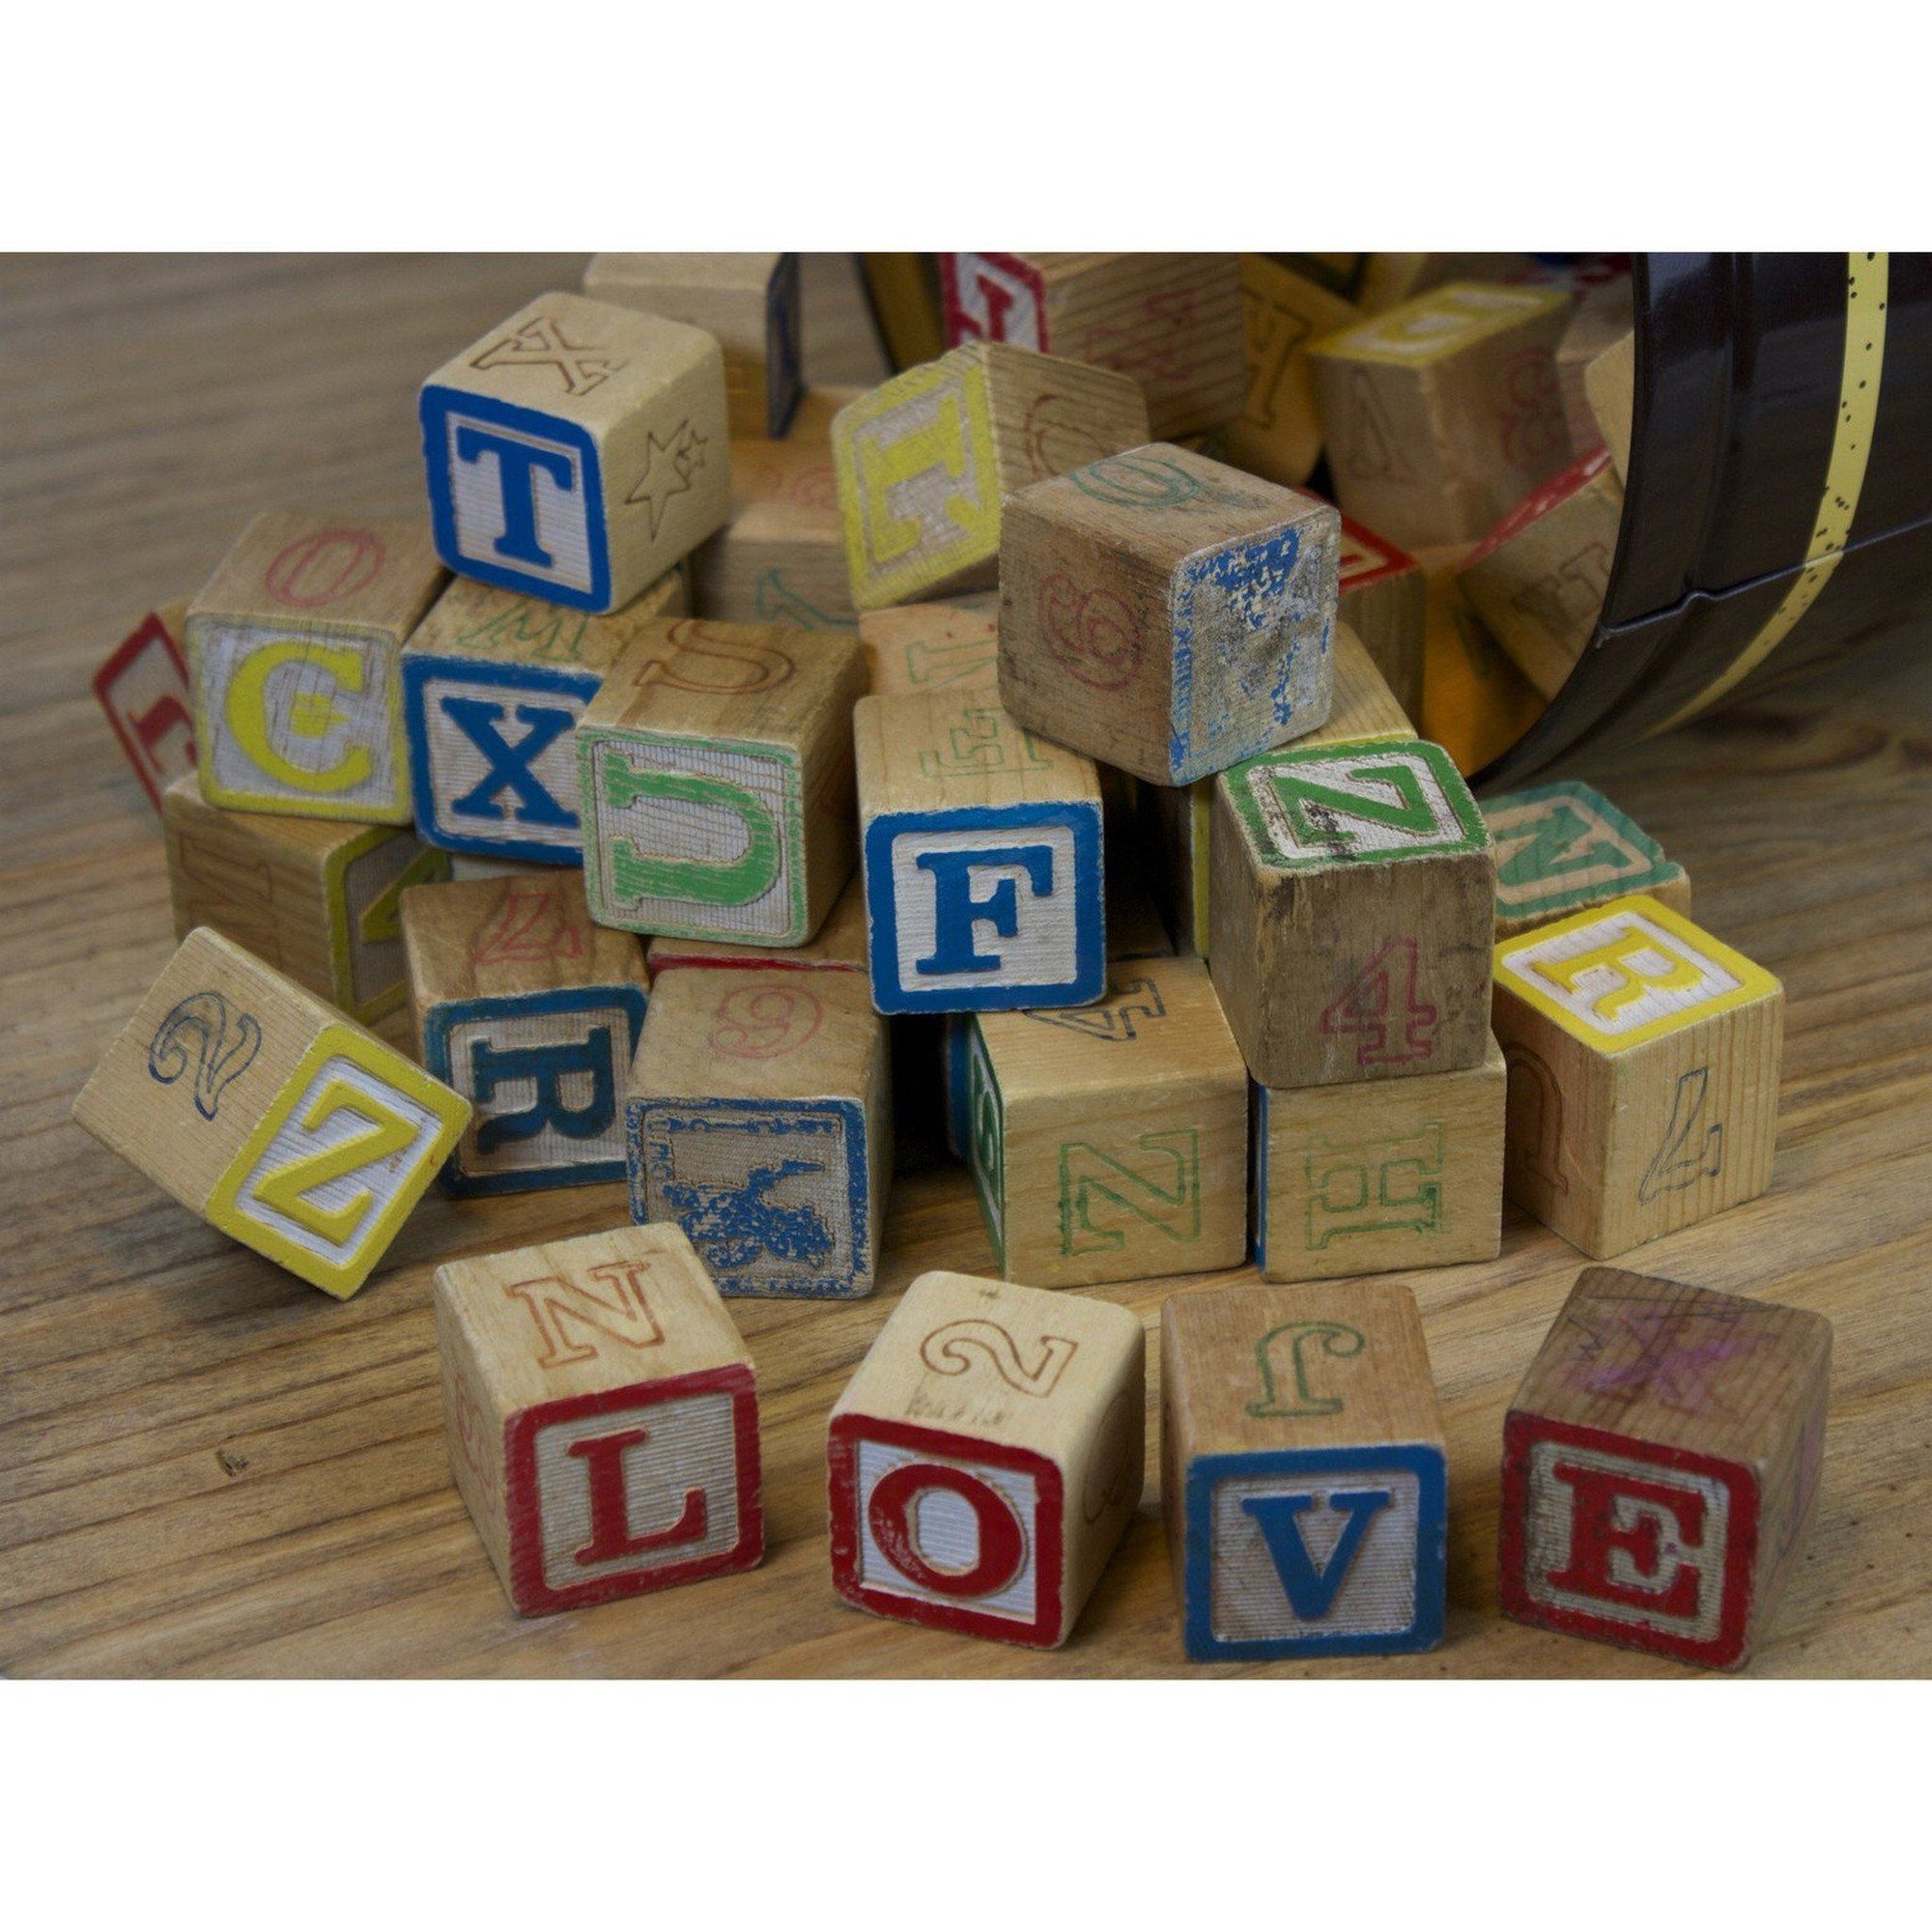 vintage wooden alphabet blocks